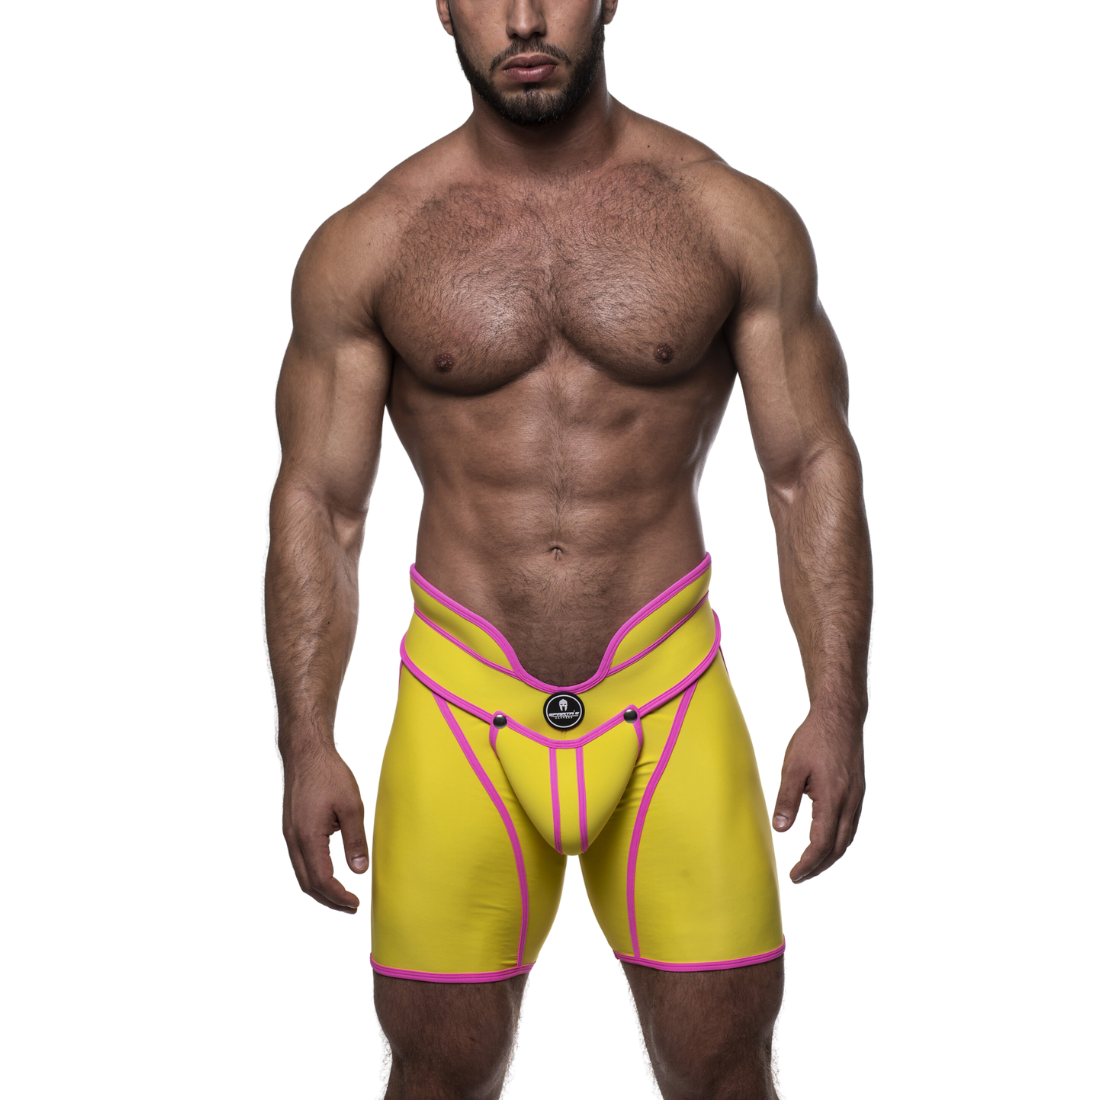 Unieke gele short met hoge tailleband en roze accenten, ontworpen door het Italiaanse modehuis Sparta’s Harness en te koop bij Flavourez.